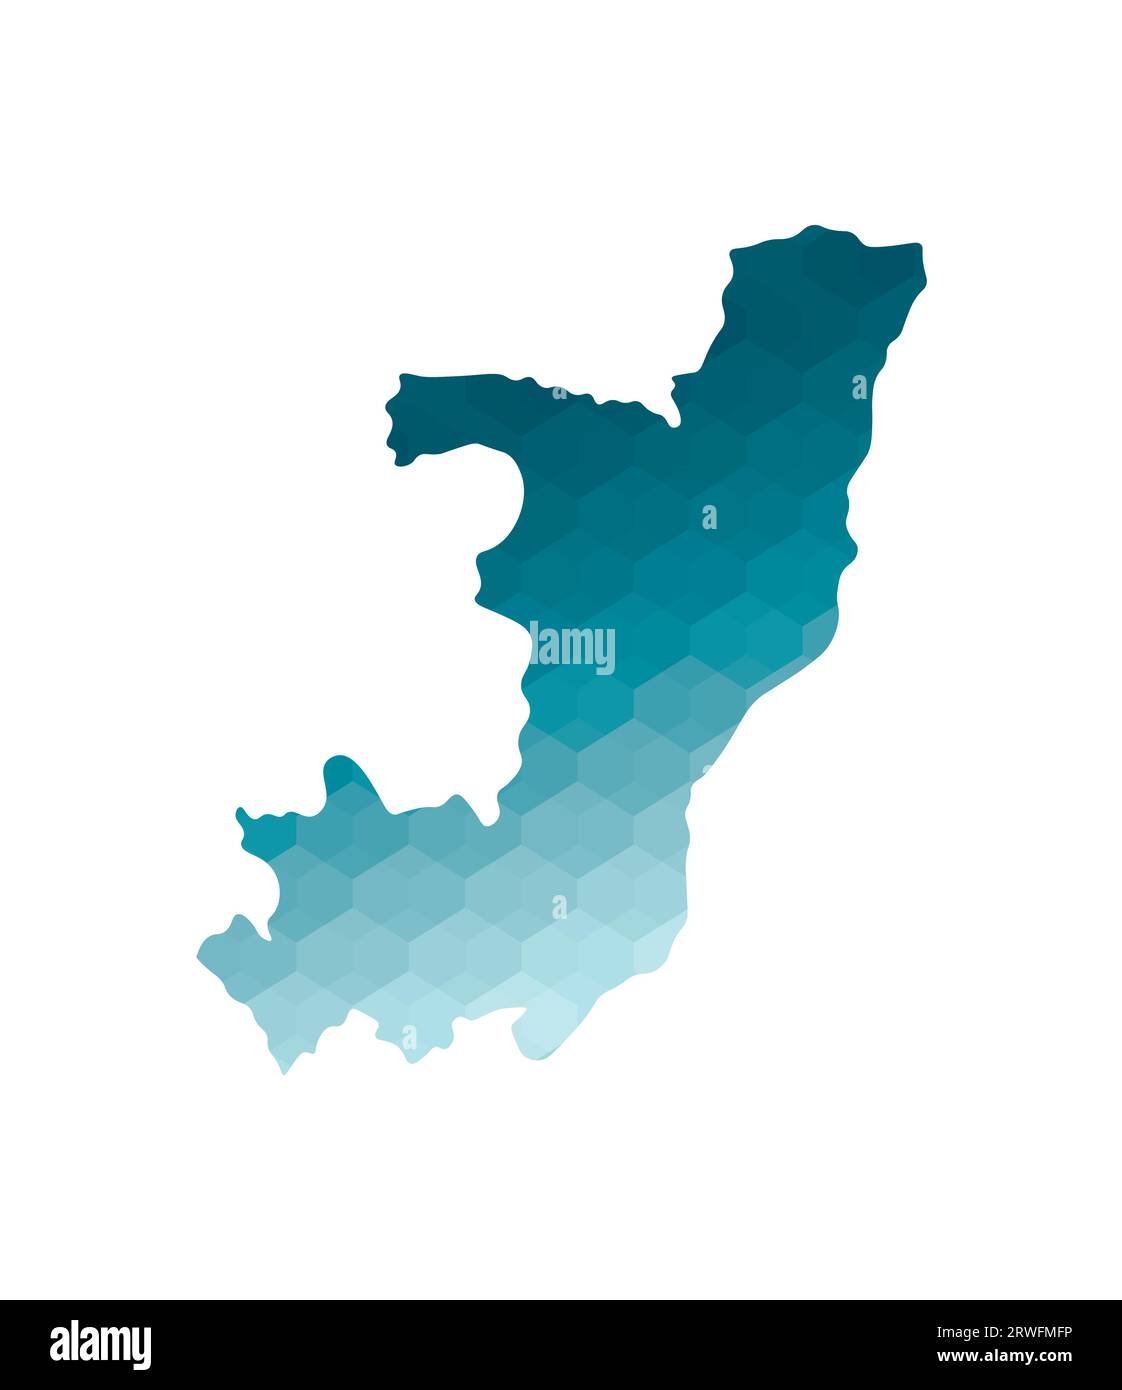 Icône d'illustration isolée vectorielle avec silhouette bleue simplifiée de la carte de la République du Congo. Style géométrique polygonal. Fond blanc. Illustration de Vecteur